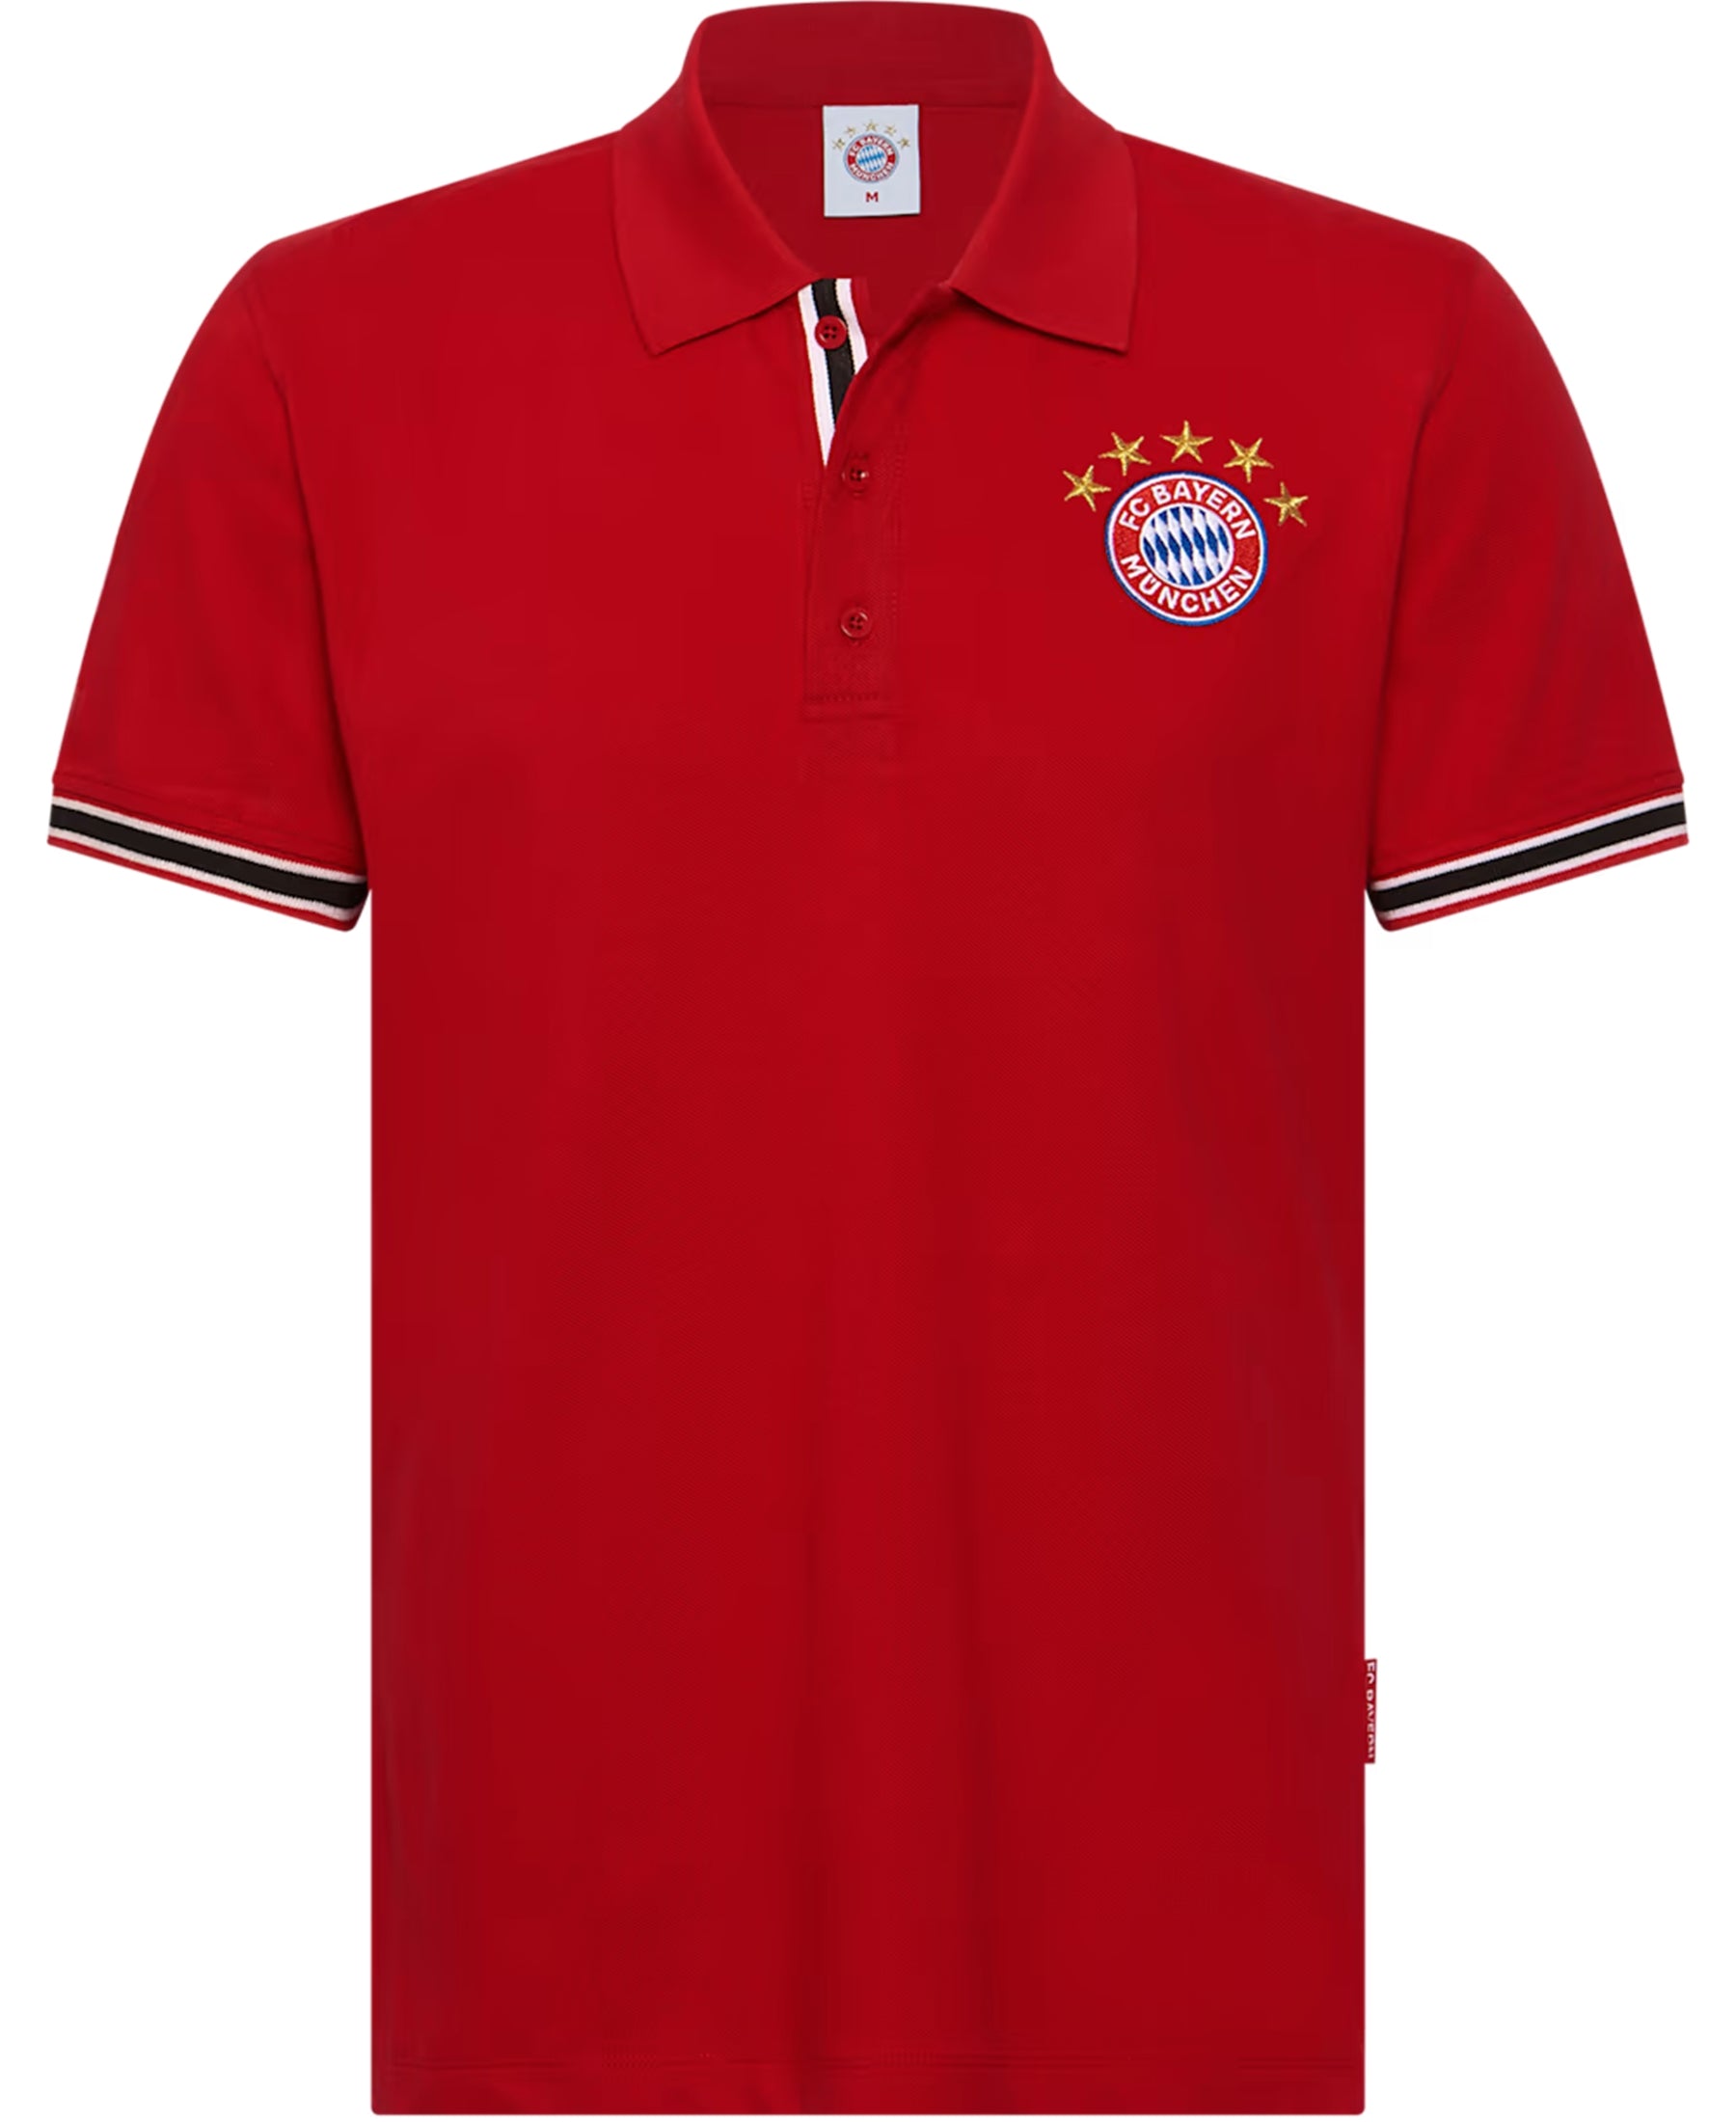 rhalten Sie stilvolle Eleganz und zeigen Sie Ihre Treue zum FC Bayern München mit dem FC Bayern München Logo Poloshirt (30422). Dieses hochwertige Poloshirt bietet hohen Tragekomfort und ist perfekt für Fans, die ihren Verein repräsentieren möchten. Bestellen Sie jetzt bei SHOP4TEAMSPORT und kleiden Sie sich im FC Bayern Stil!